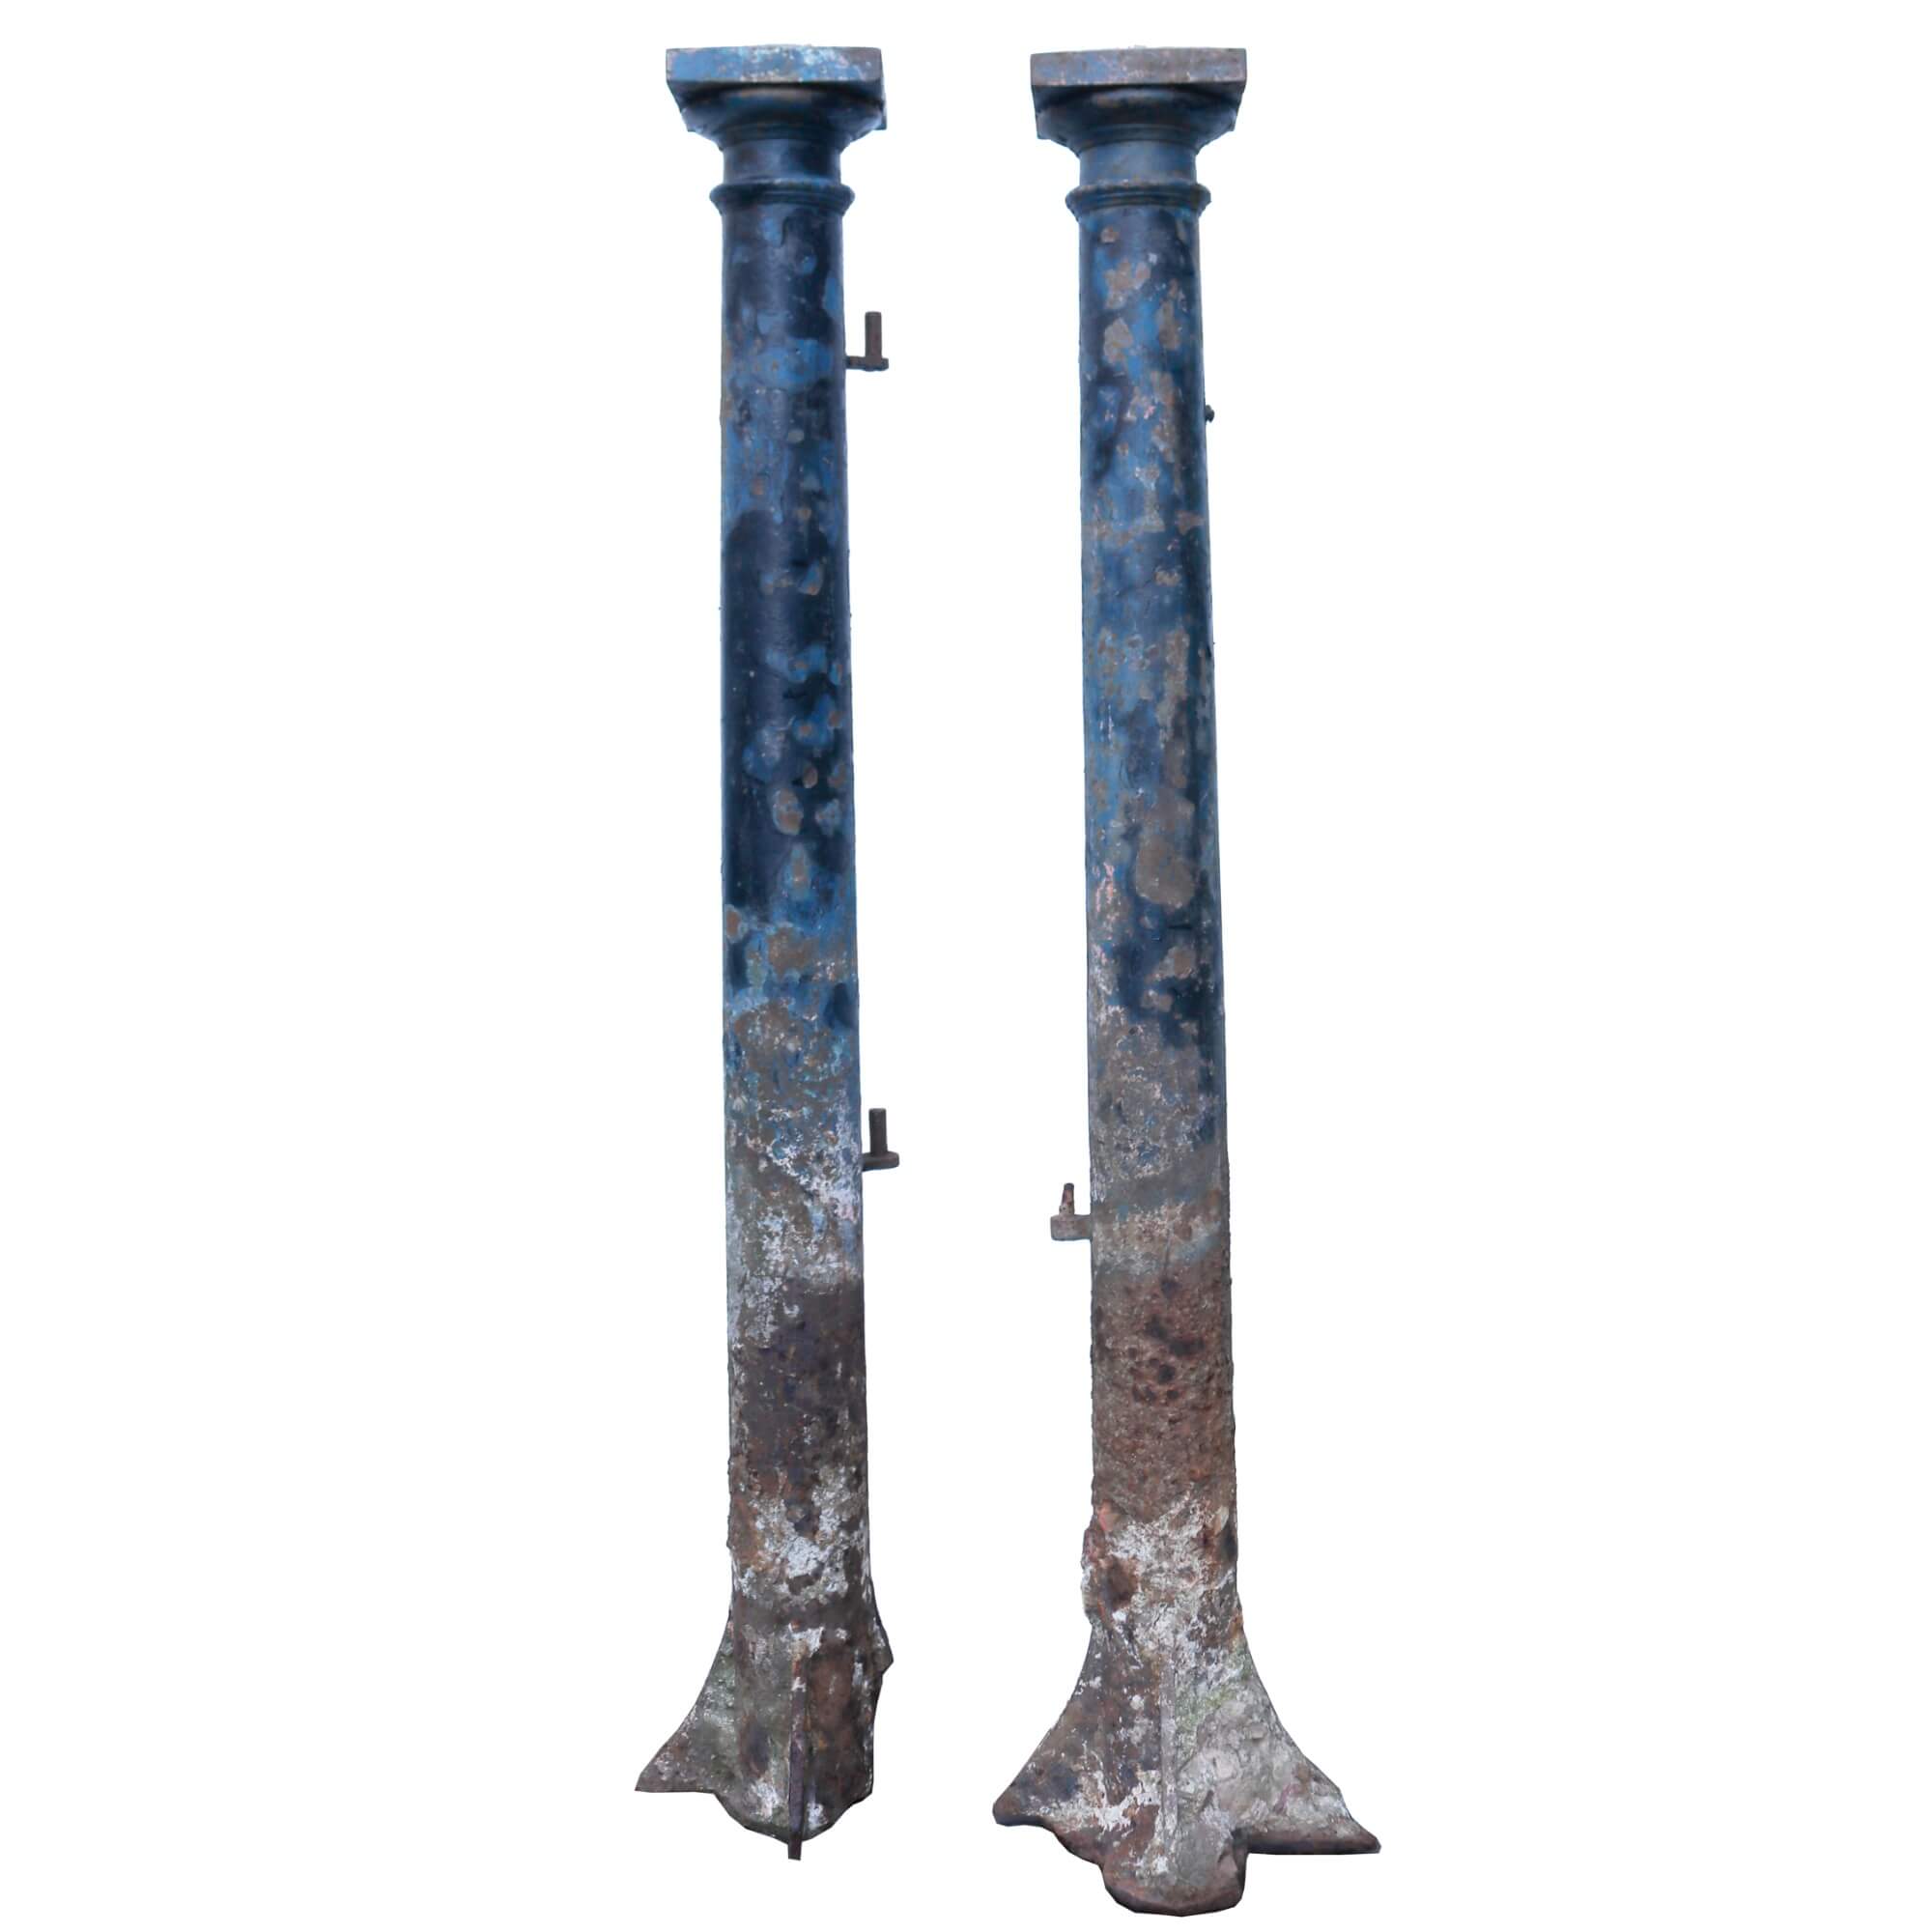 Pair of Antique Cast Iron Gate Posts